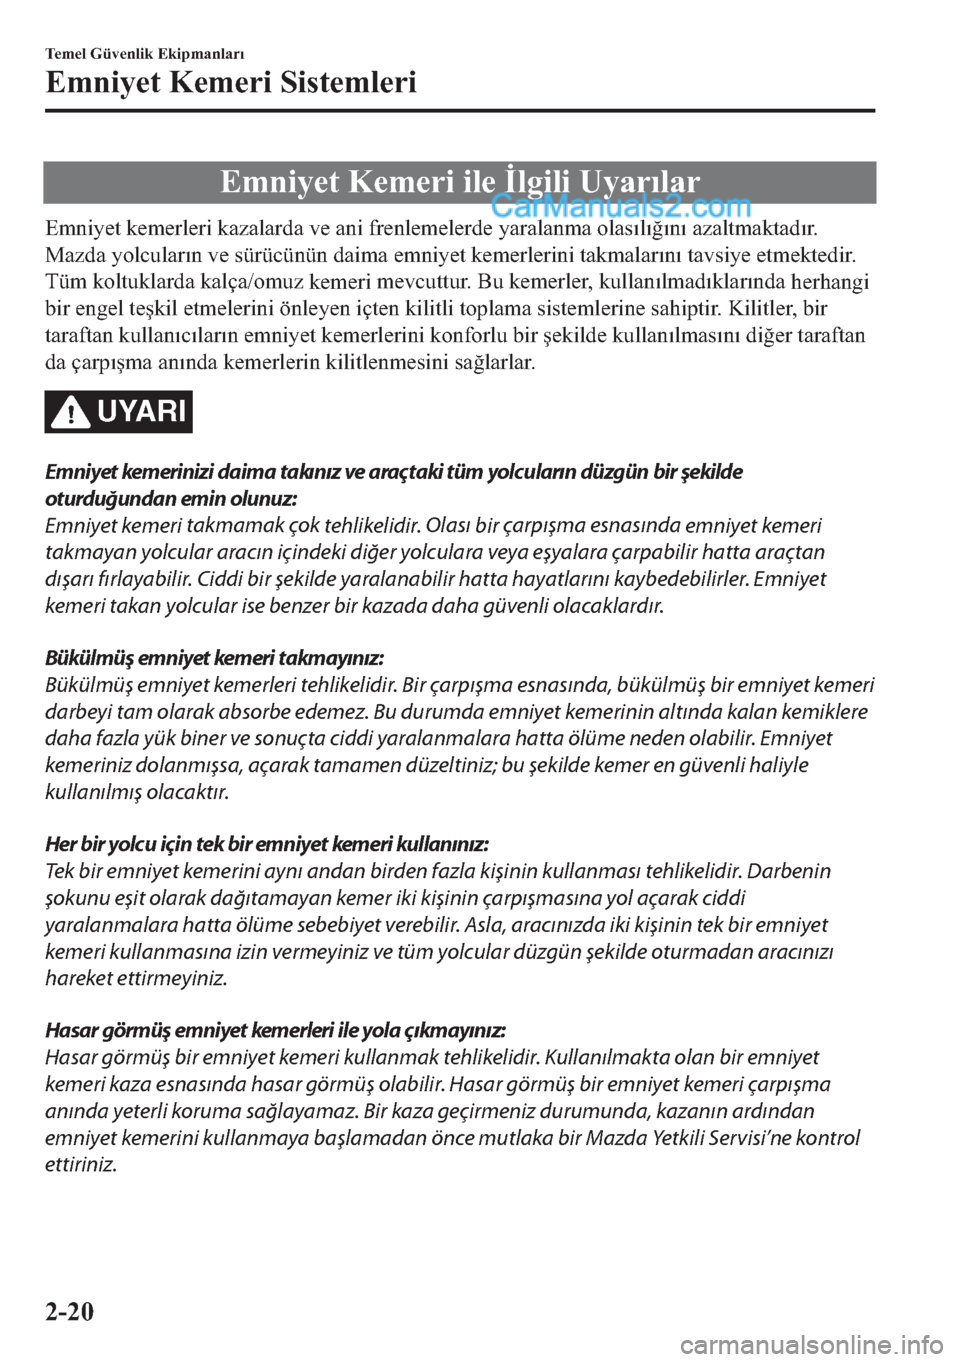 MAZDA MODEL 2 2019  Kullanım Kılavuzu (in Turkish) �(�P�Q
t�\�H�W�
�.�H�P�H�U
t�

t�O�H�
�ø�O�J
t�O
t��8�\�D�U�Õ�O�D�U
�(�P�Q
t�\�H�W�
�N�H�P�H�U�O�H�U
t��N�D�]�D�O�D�U�G�D��Y�H�
�D�Q
t��I�U�H�Q�O�H�P�H�O�H�U�G�H��\�D�U�D�O�D�Q�P�D��R�O�D